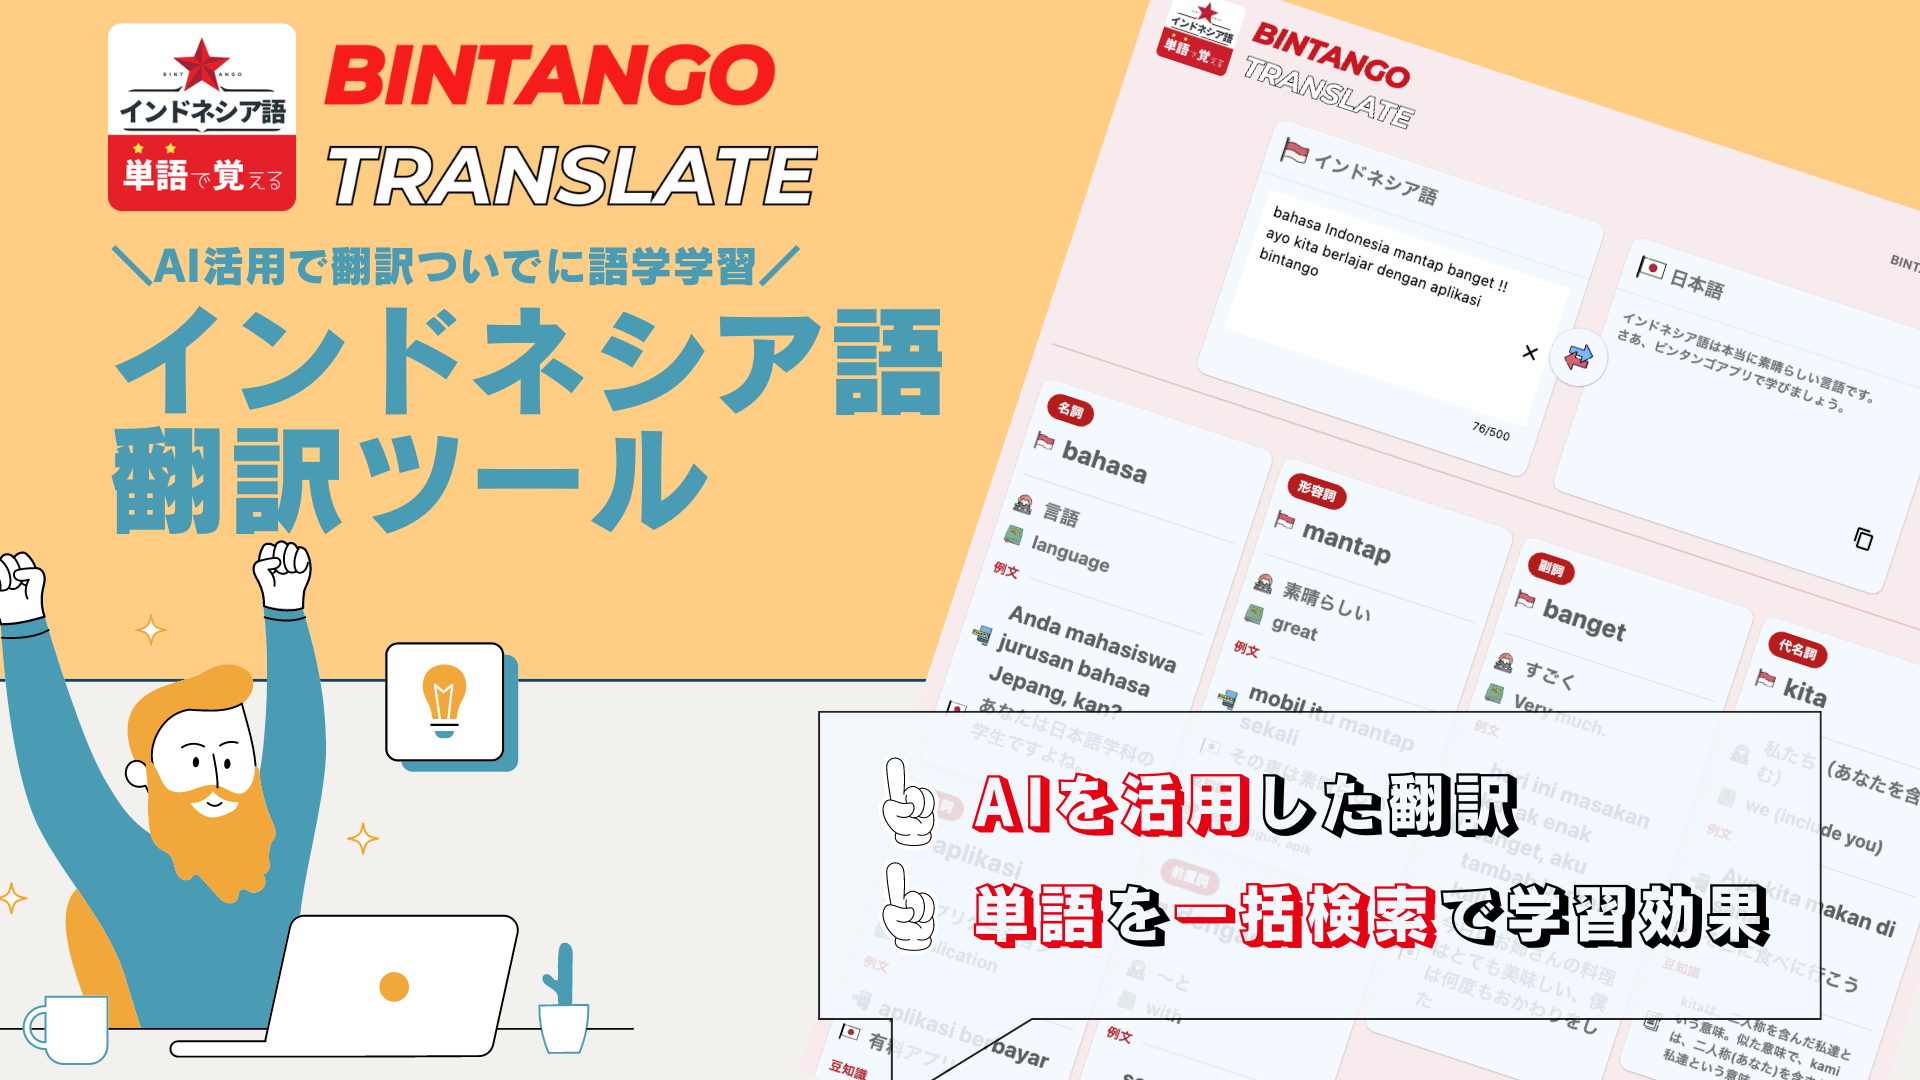 インドネシア語 AI翻訳&一括辞書検索ツール『BINTANGO Translate』の使い方を紹介